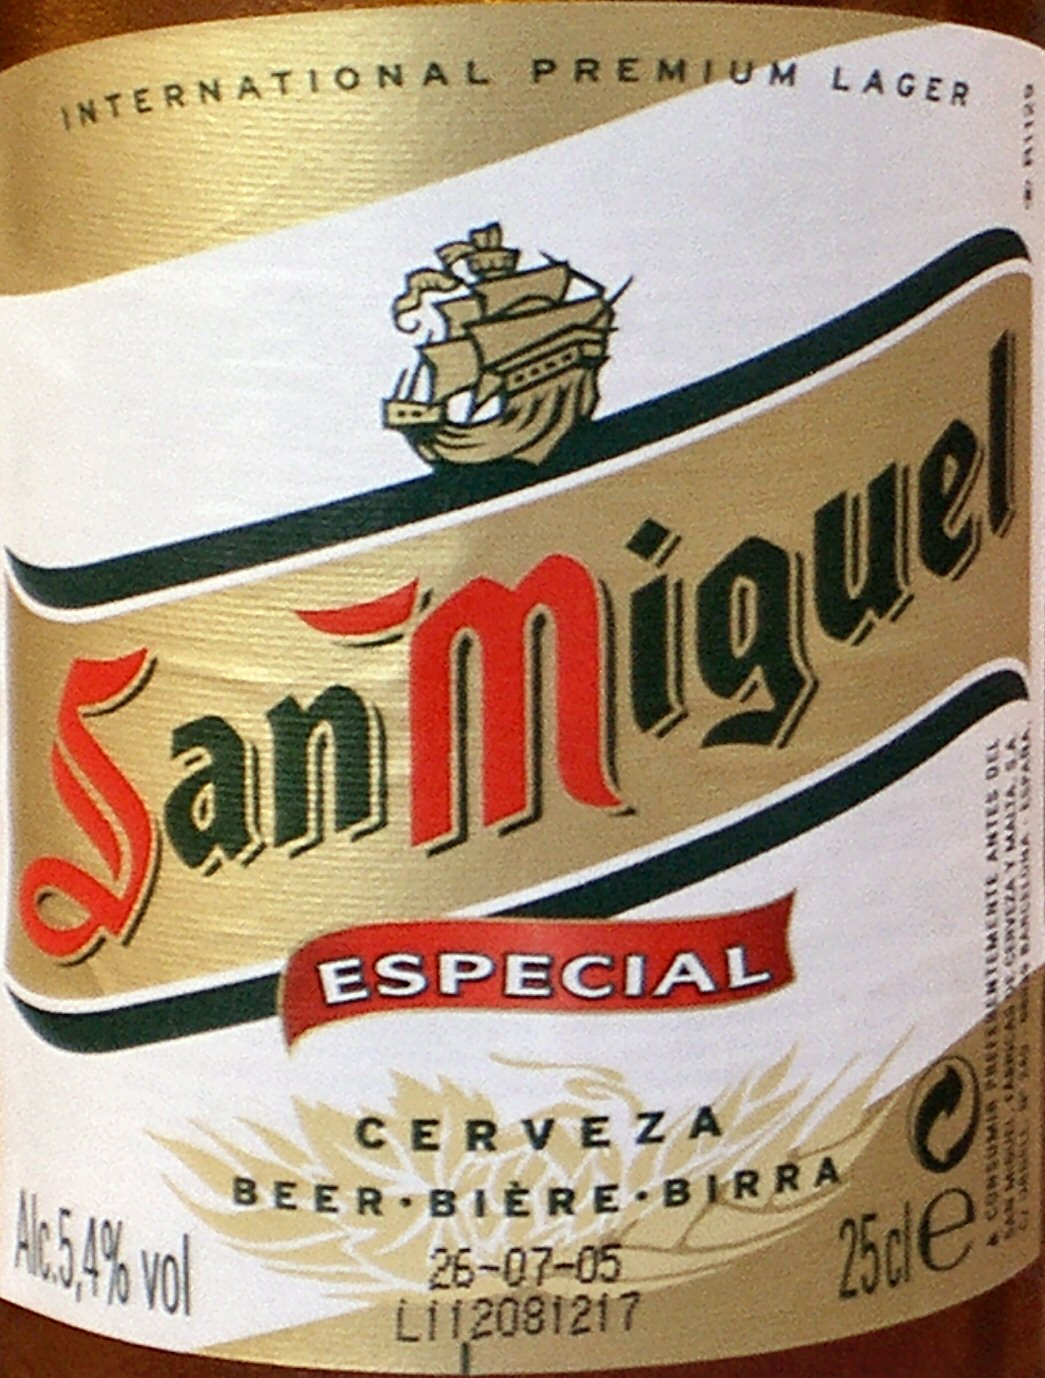 San Miguel, Spanisches Bier